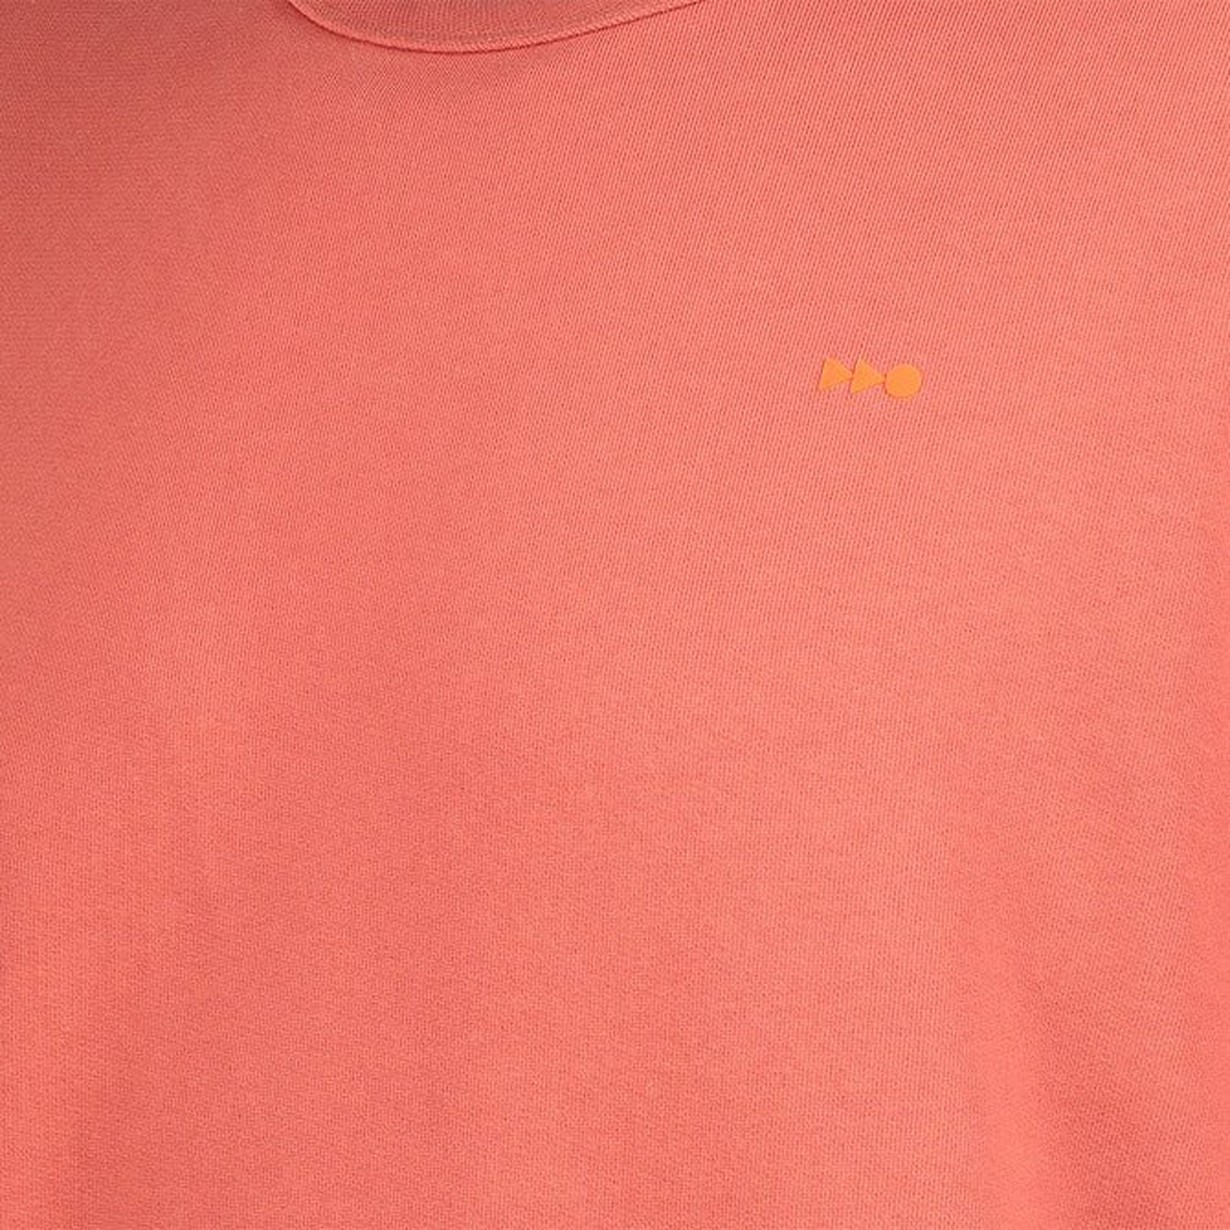 CKS - NEZIRA - sweater - oranje